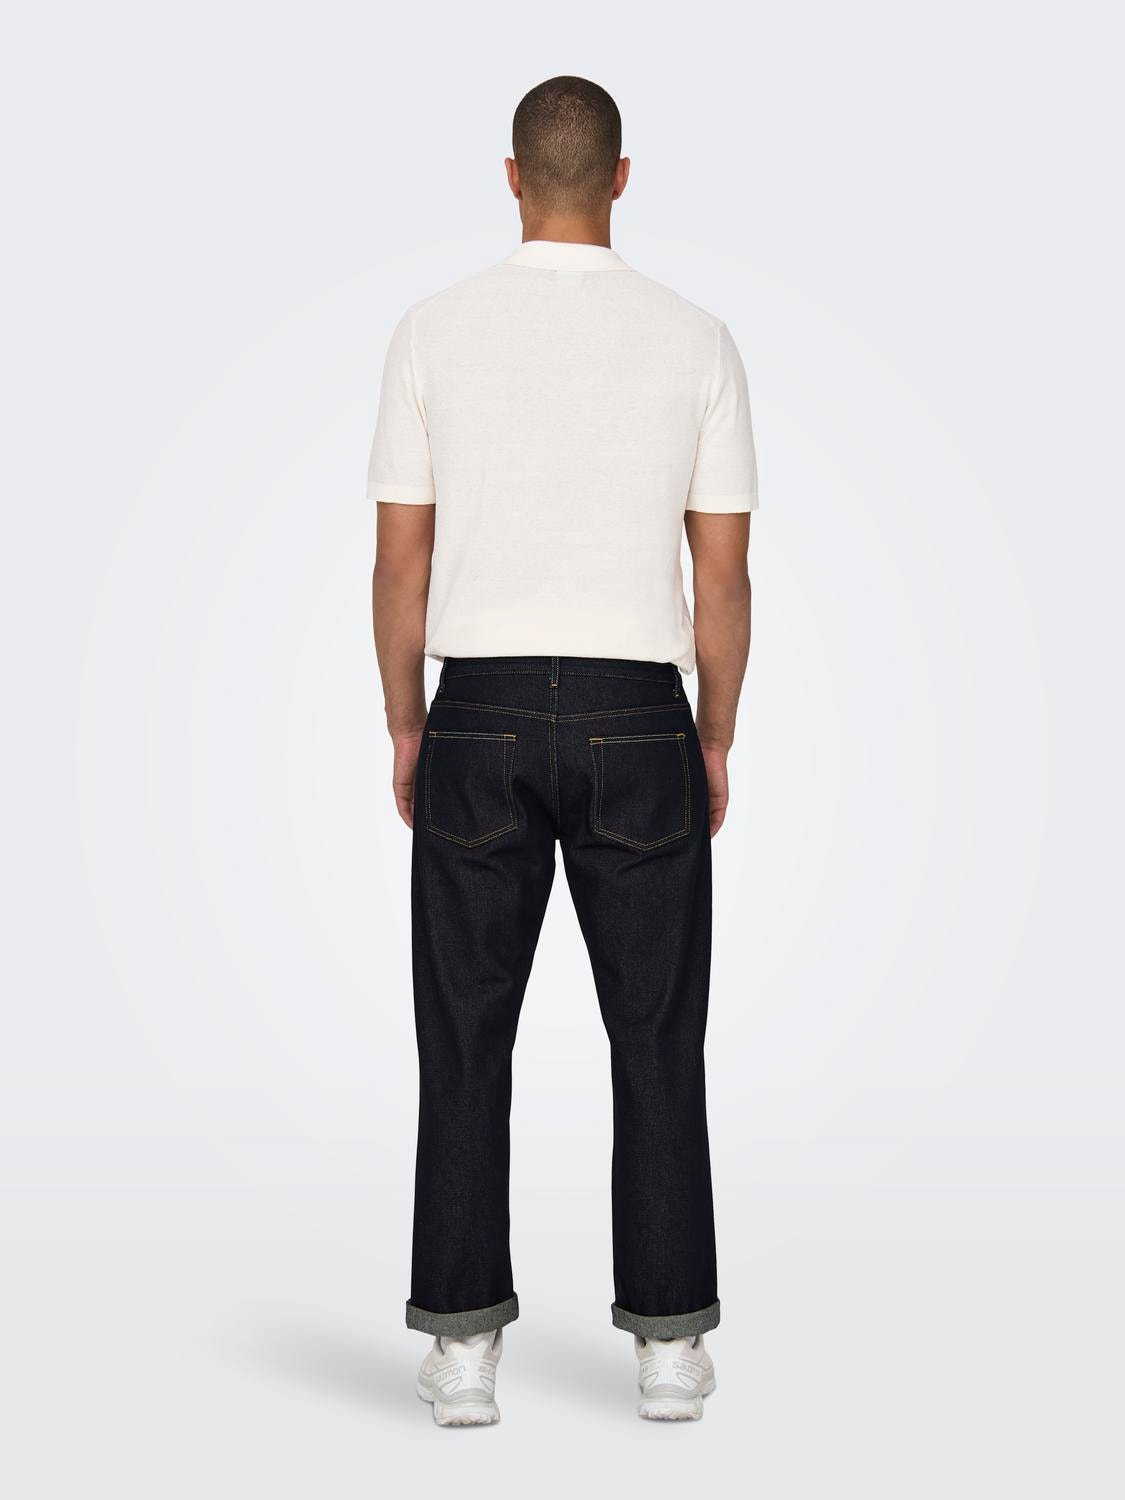 ONLY & SONS Gerade geschnitten Mittlere Taille Jeans -Dark Blue Denim - 22028307